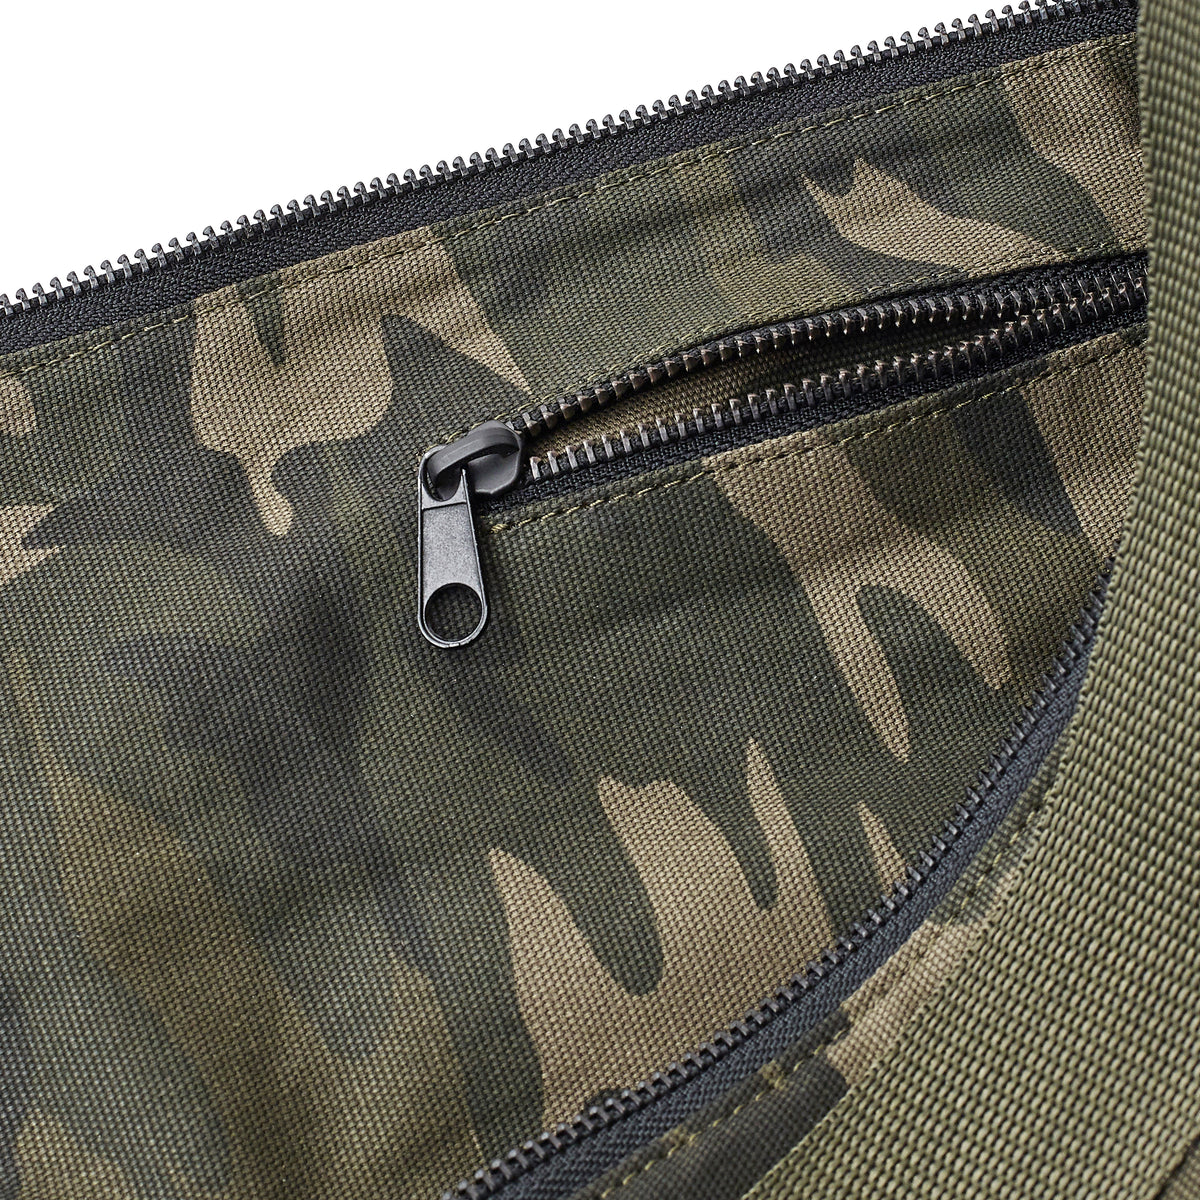 zip pocket feature of warrior addicts  yoga mat bag